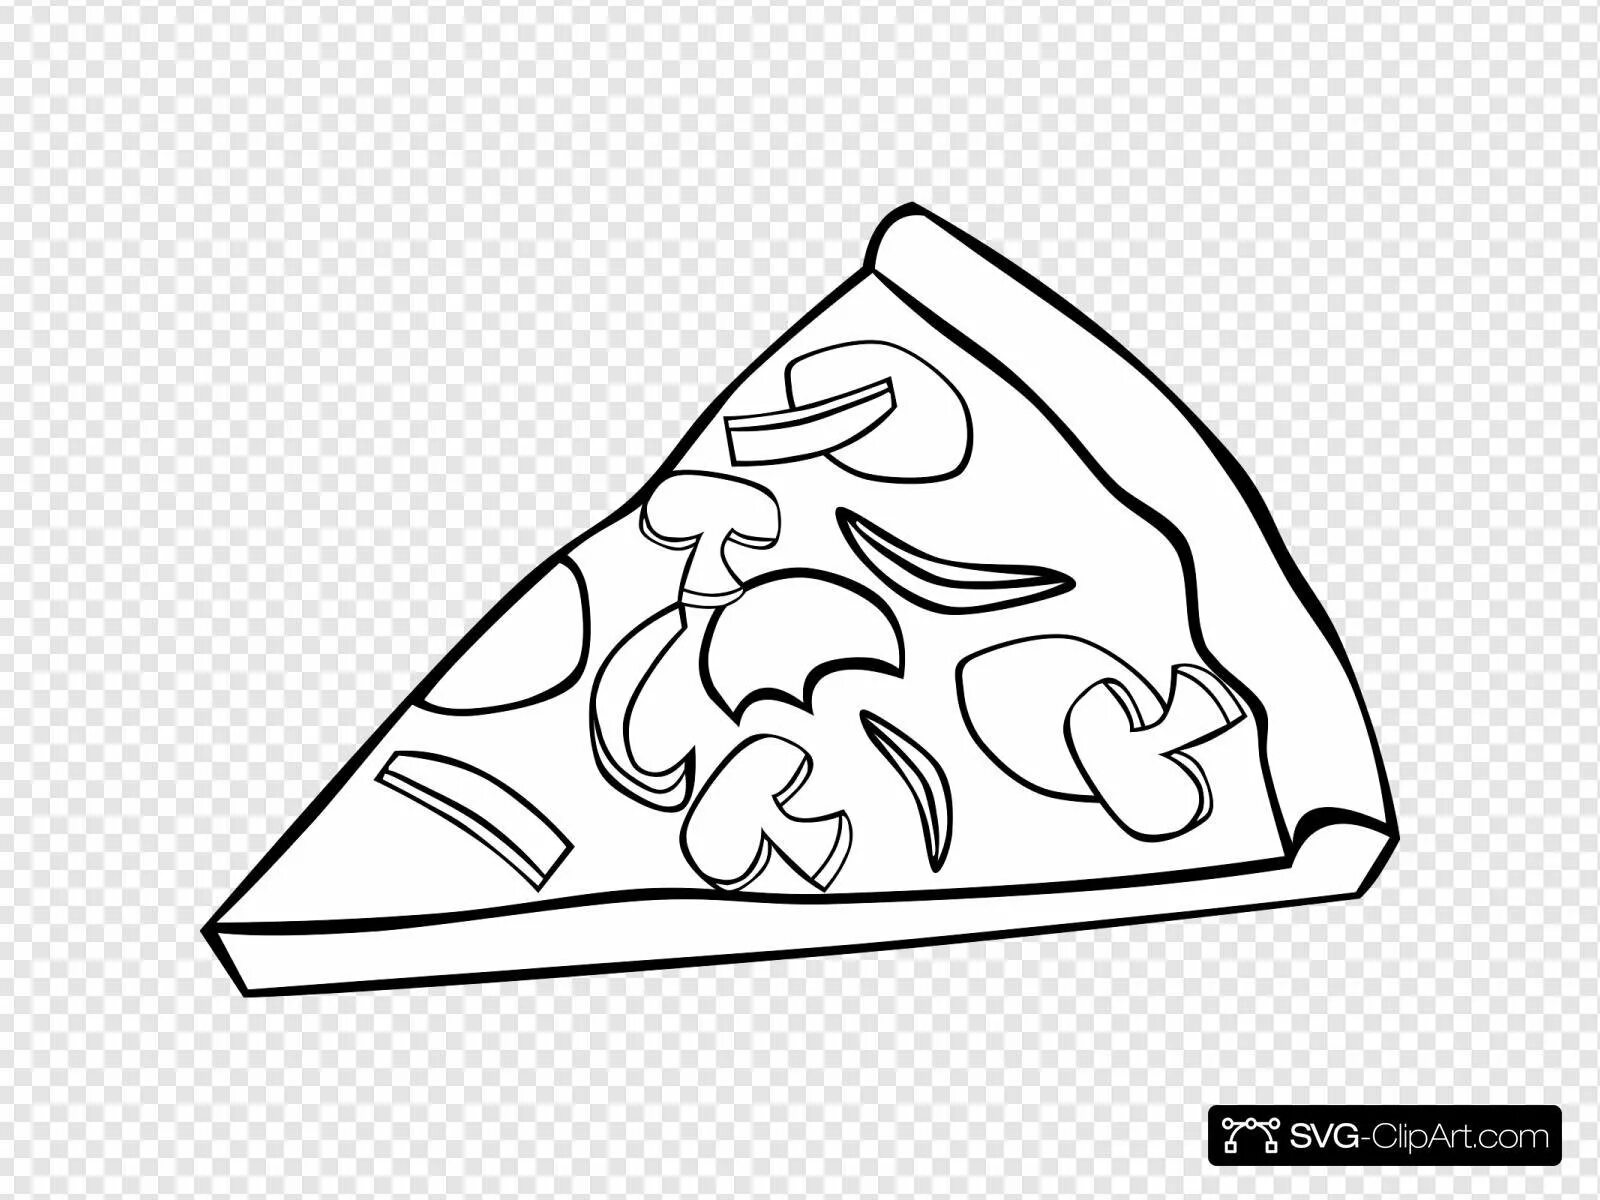 Food pizza #9